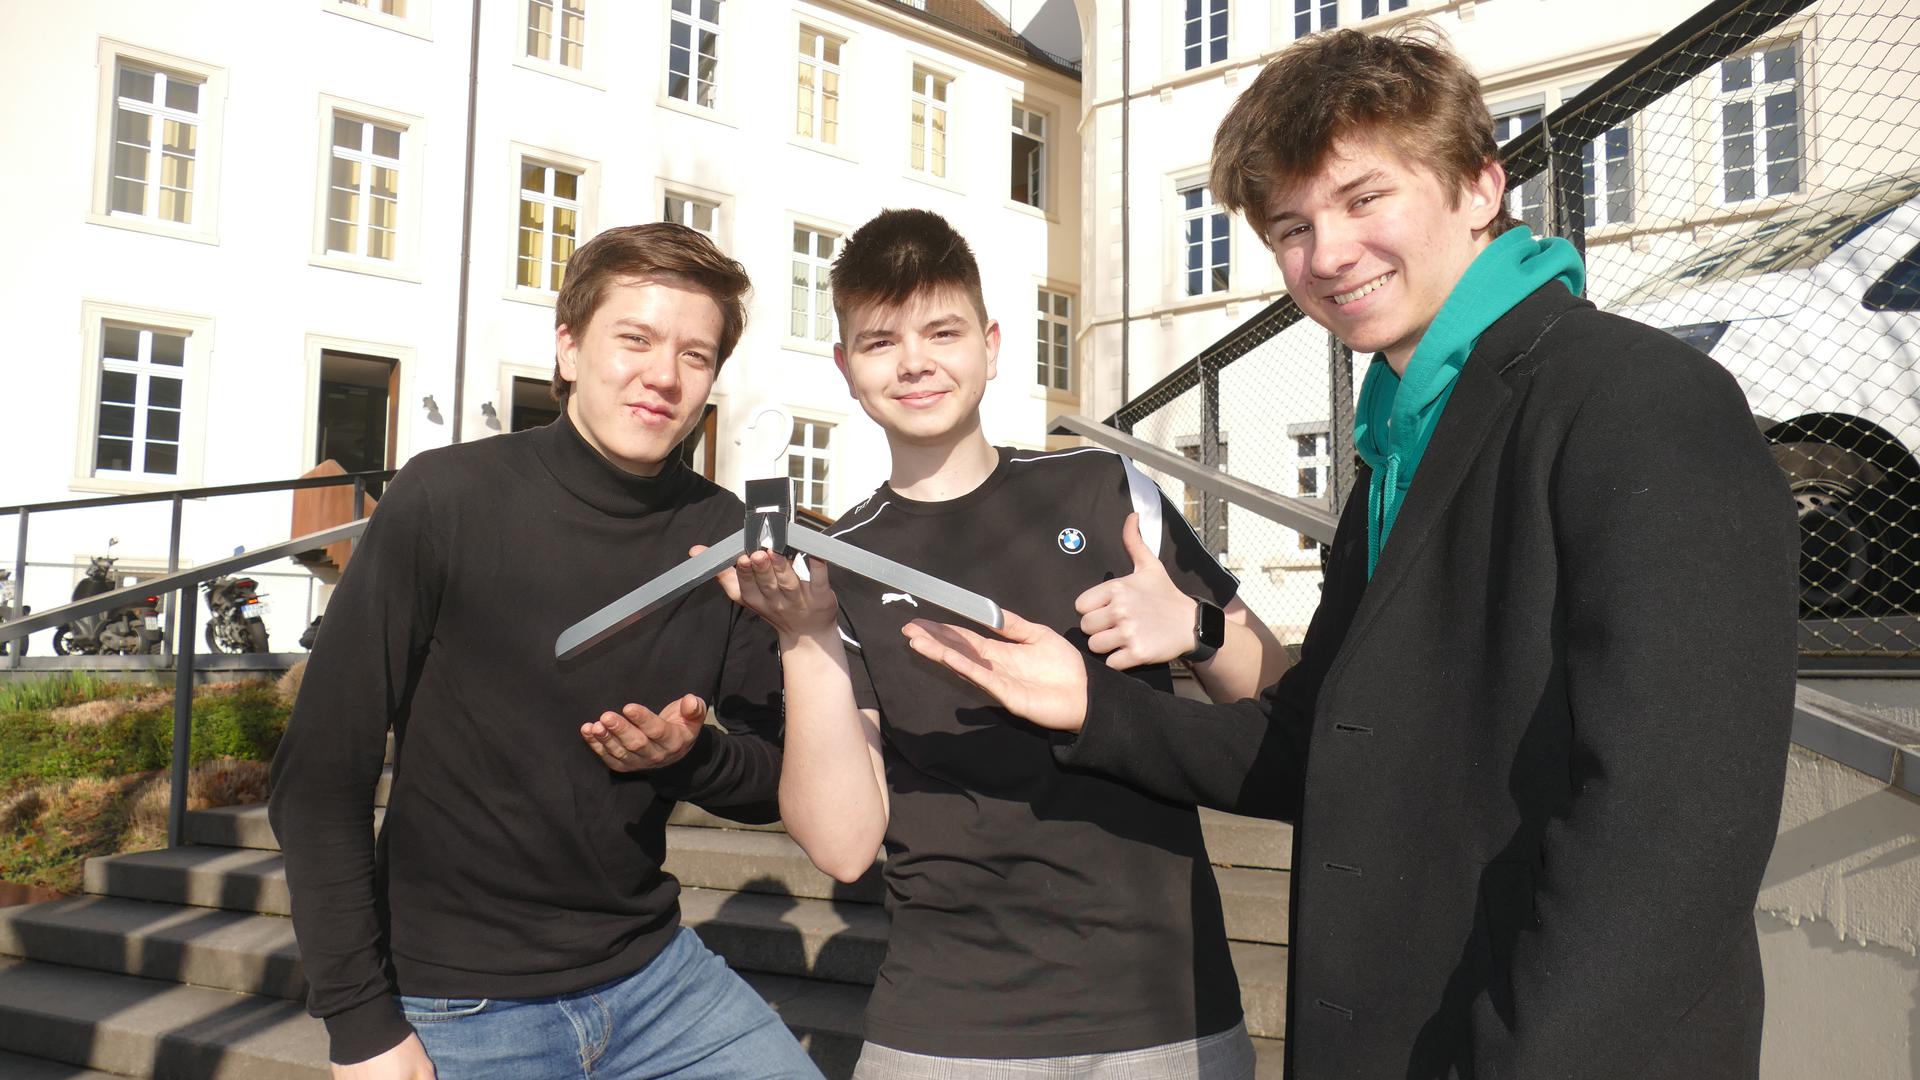  Elnar Askarov, Lucas Li, Johannes Huber und ein zusammen klappbarer Kleiderbügel 